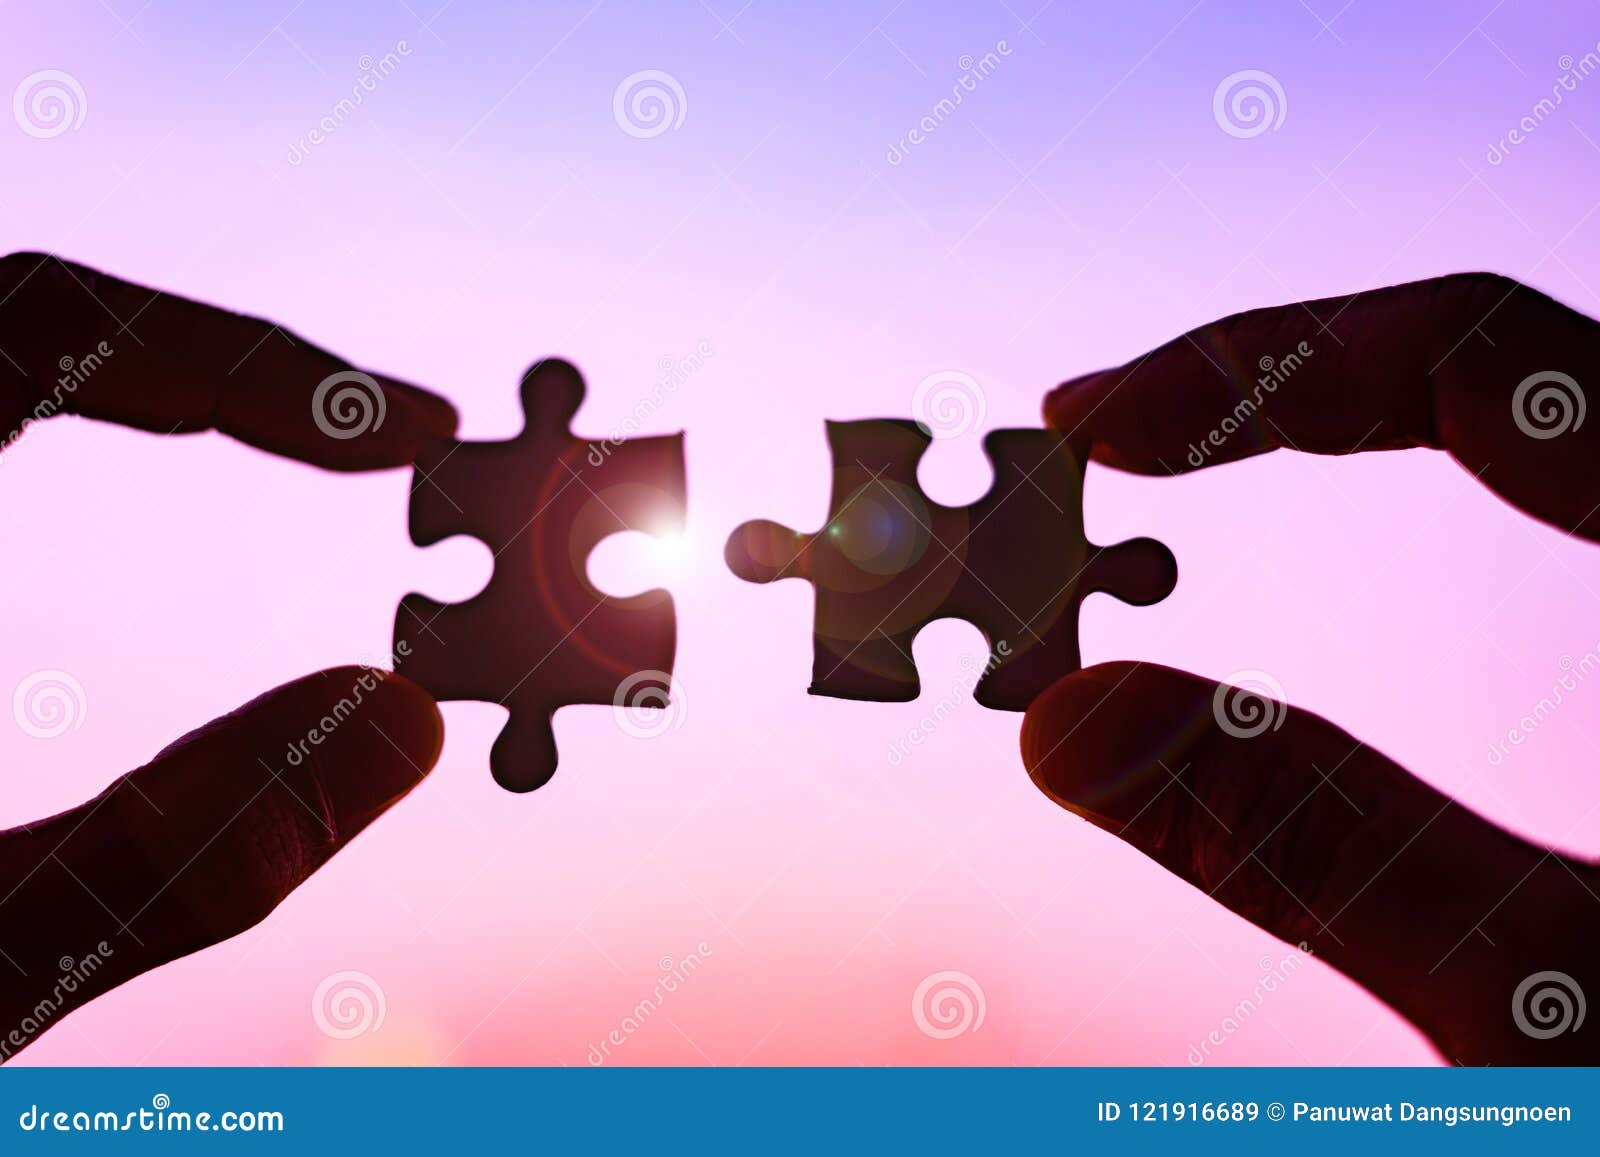 hands connecting couple puzzle piece against sunrise effec